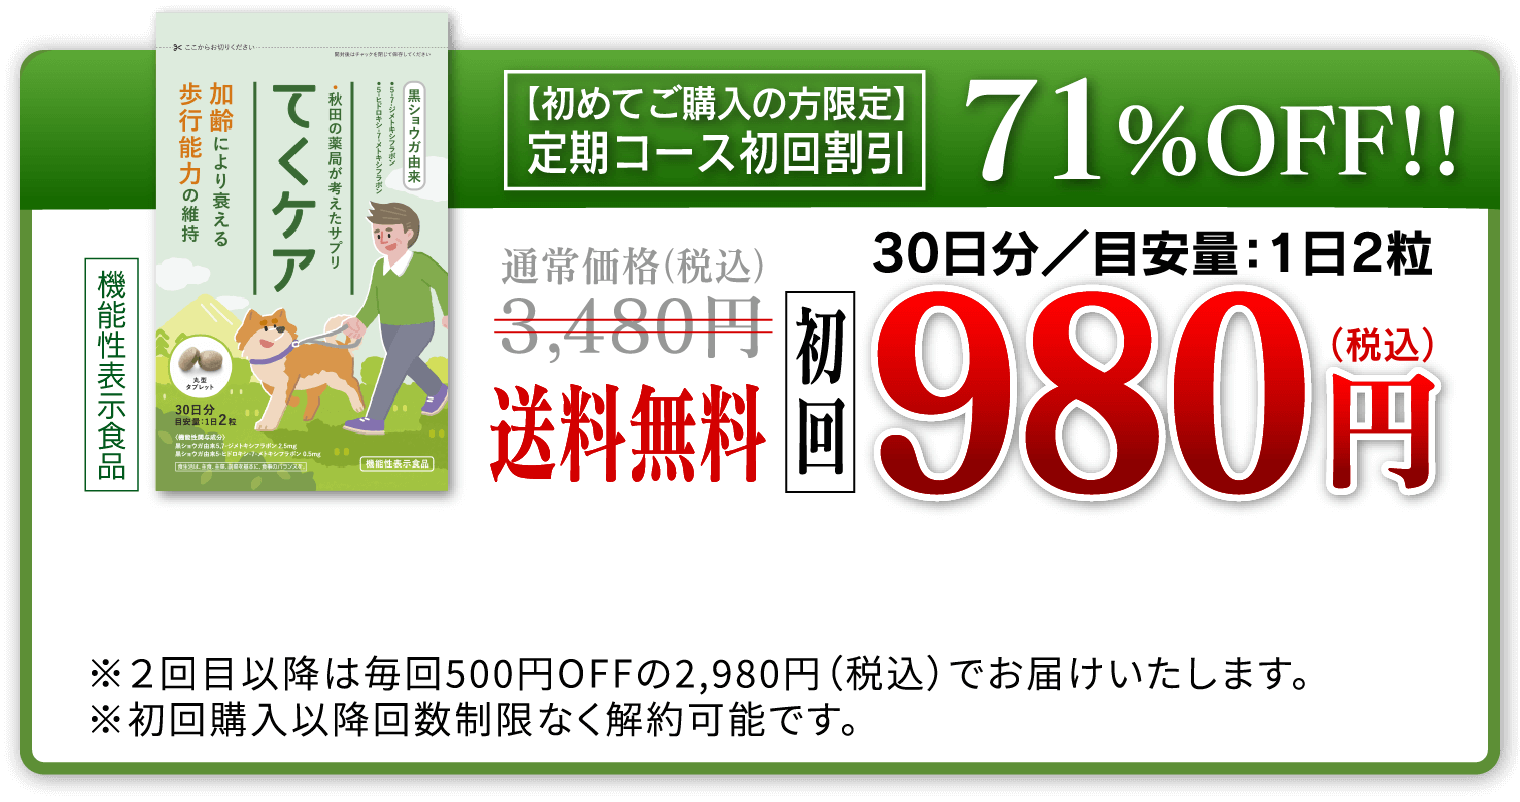 【初めてご購入の方限定】定期コース初回割引71%OFF!!